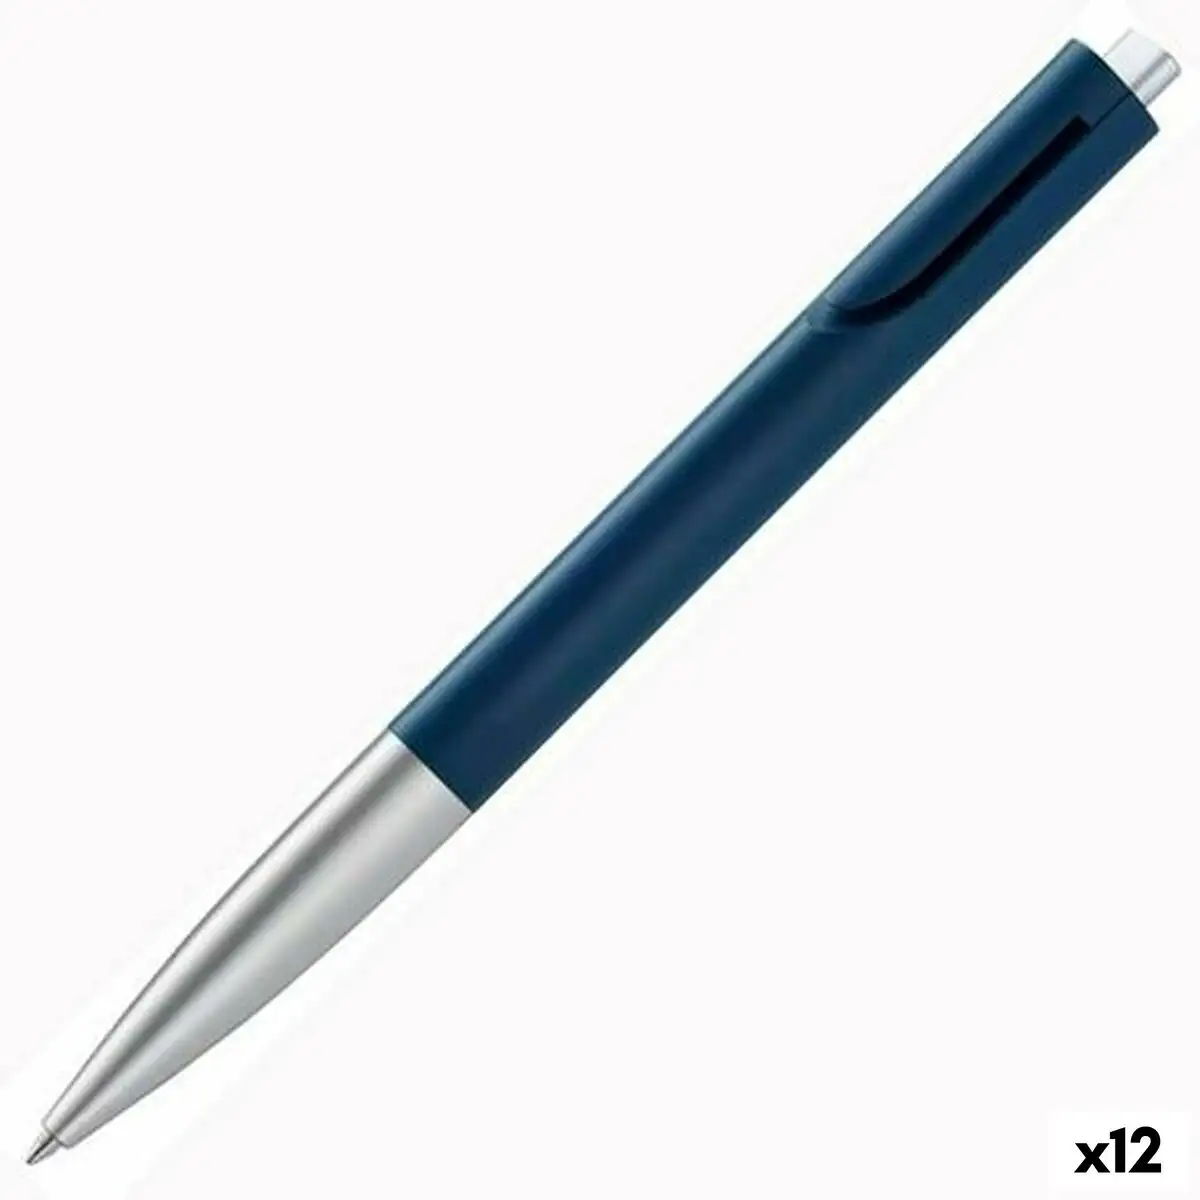 Crayon lamy noto argente bleu noir 1 mm medias 12 unites_5678. DIAYTAR SENEGAL - Là où Chaque Clic Compte. Parcourez notre boutique en ligne et laissez-vous guider vers des trouvailles uniques qui enrichiront votre quotidien.